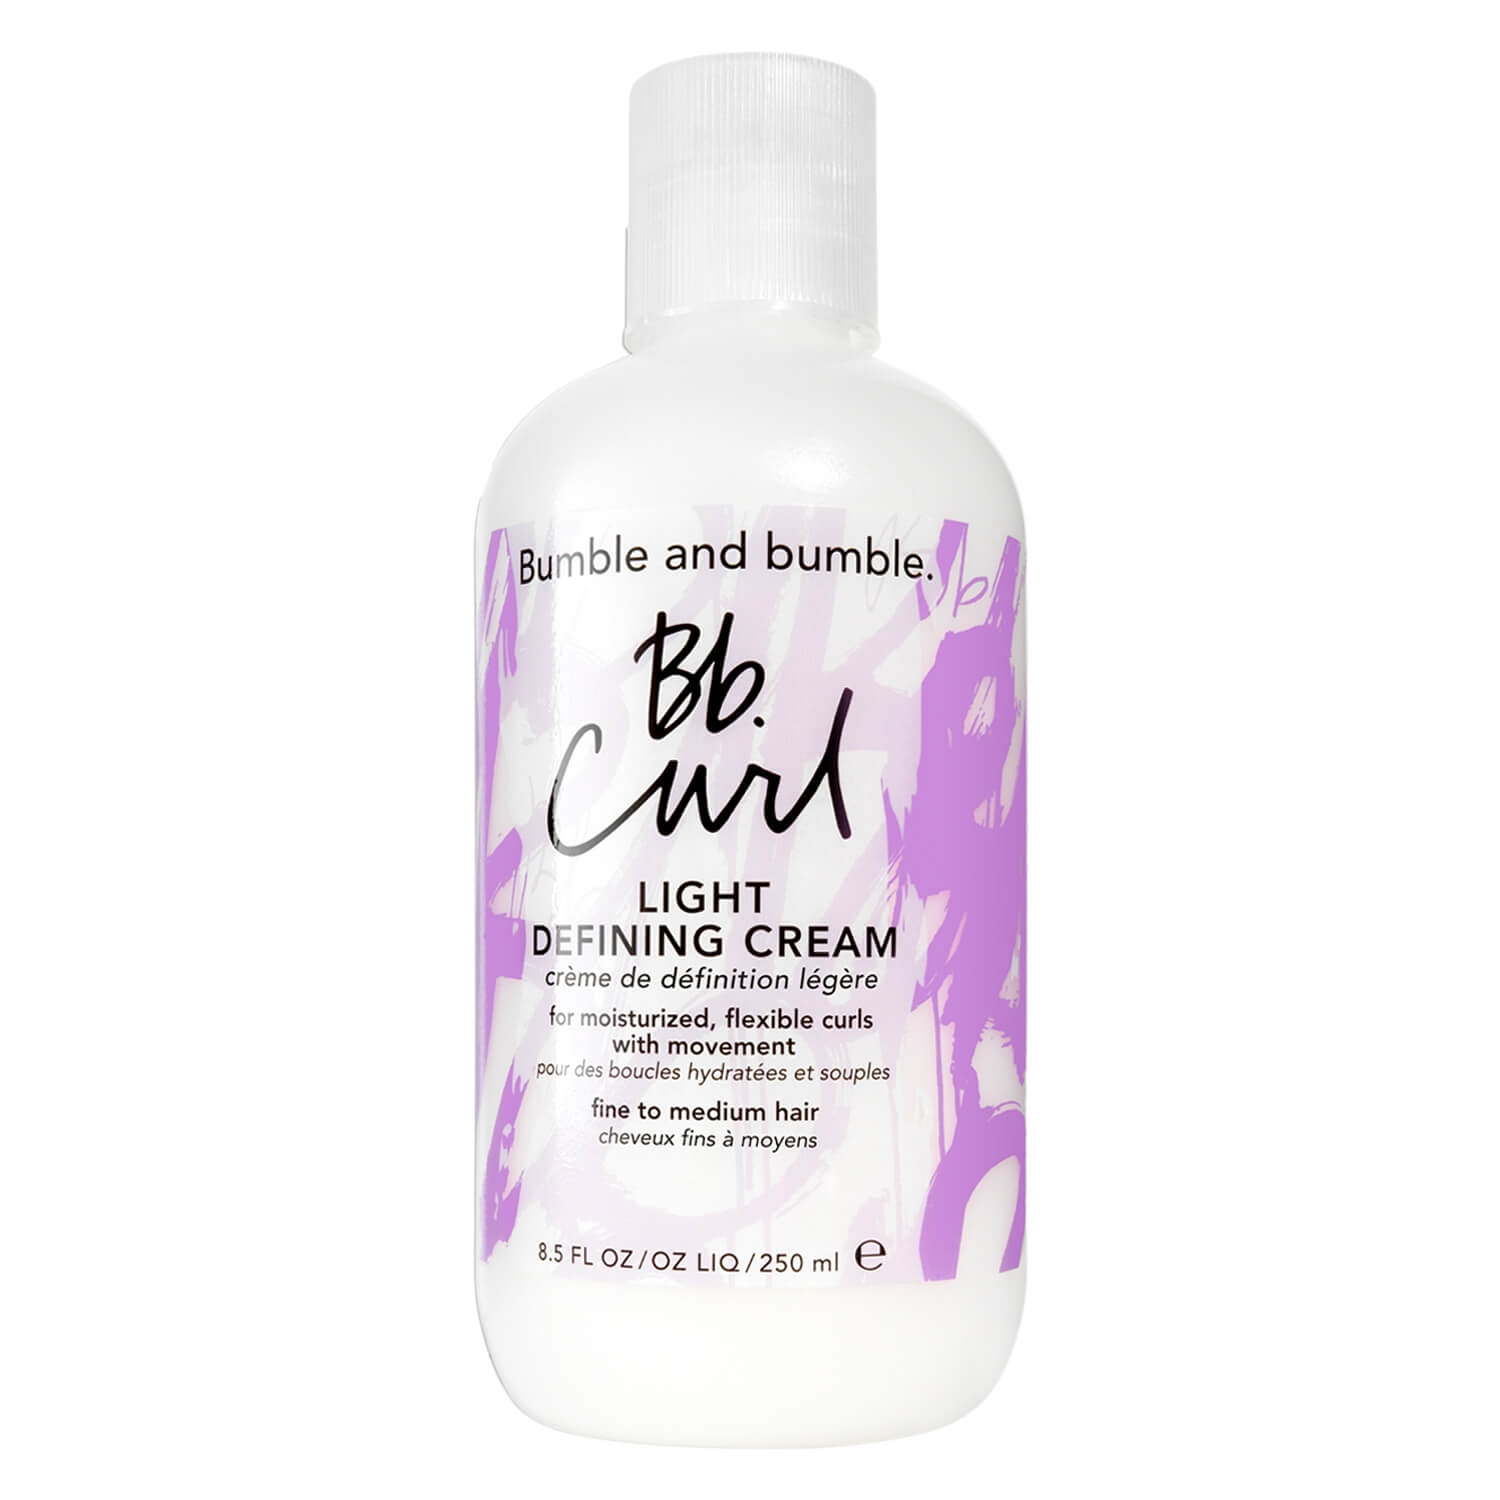 Produktbild von Bb. Curl Defining Cream Light